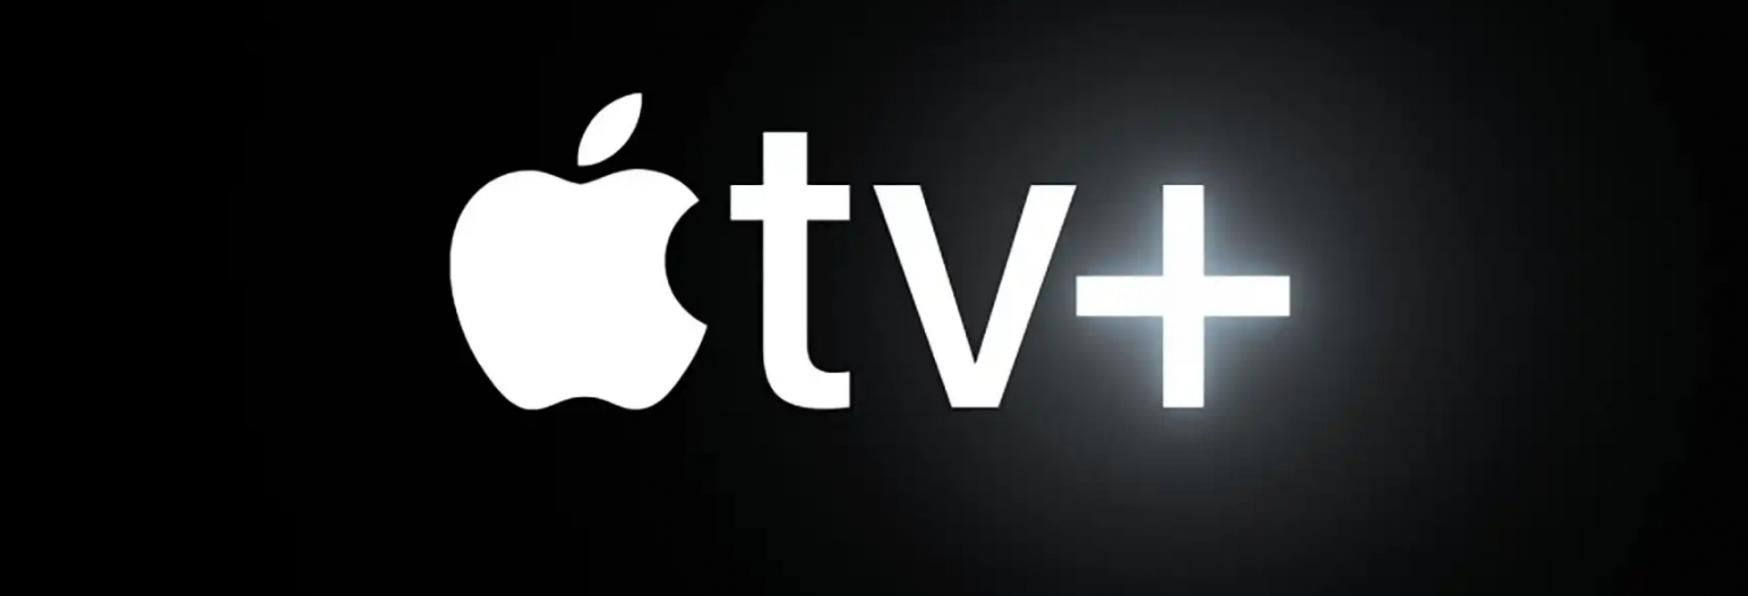 Manhunt: le Ultime Aggiunte al Cast dell'inedita Serie TV targata Apple